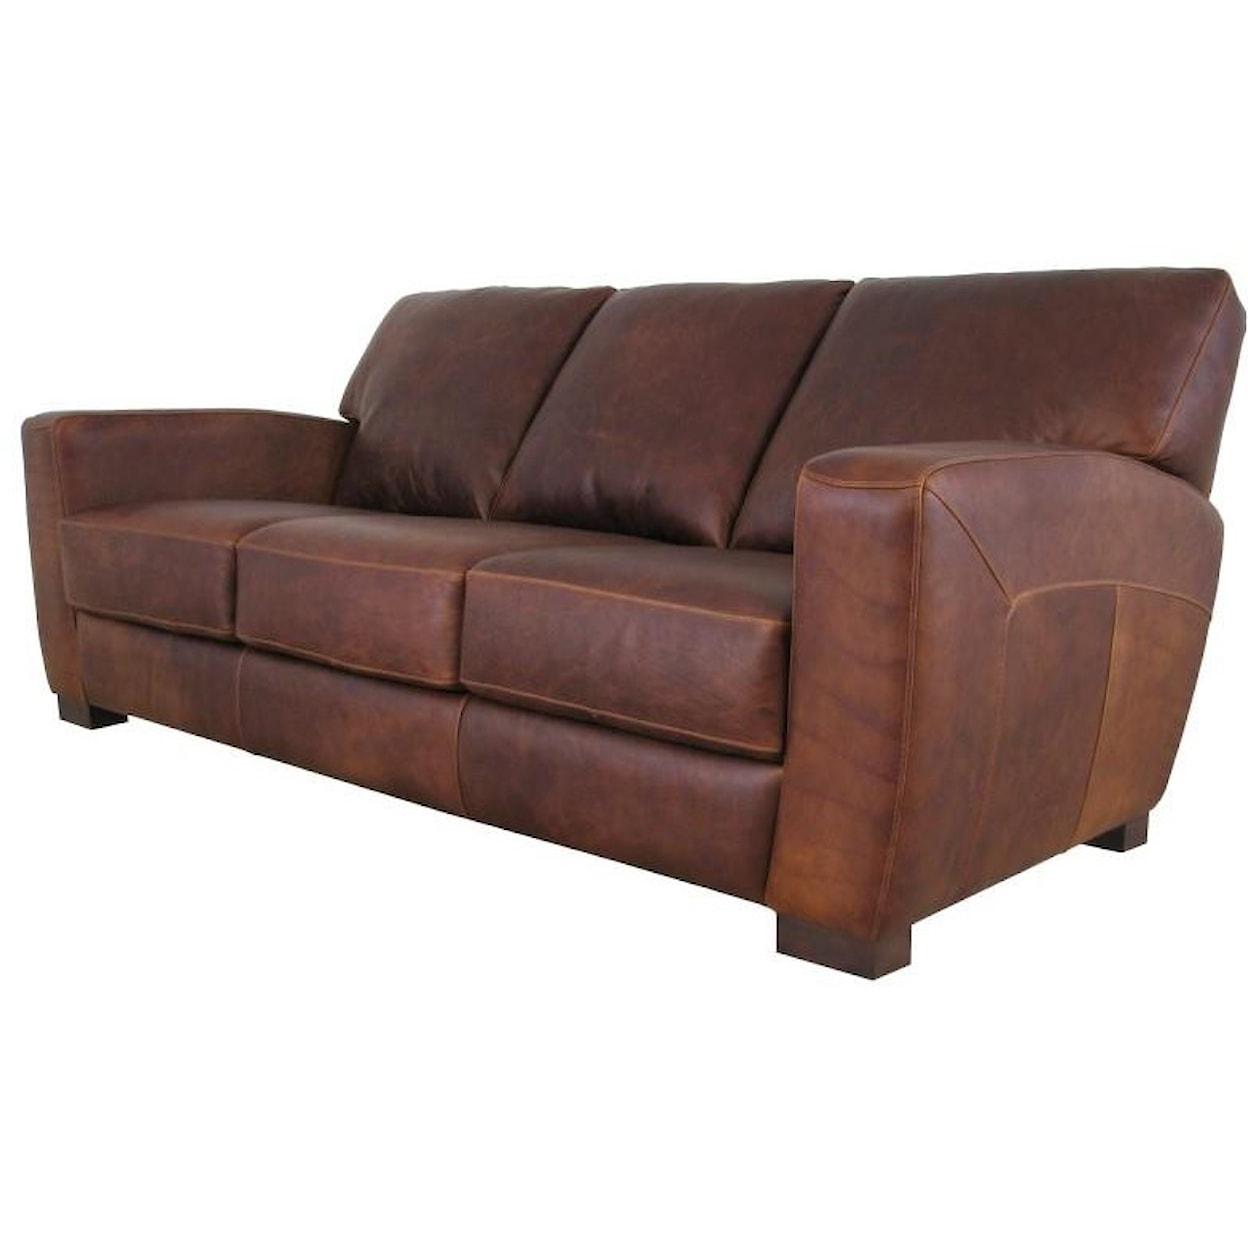 Virginia Furniture Market Premium Leather Palermo Sofa